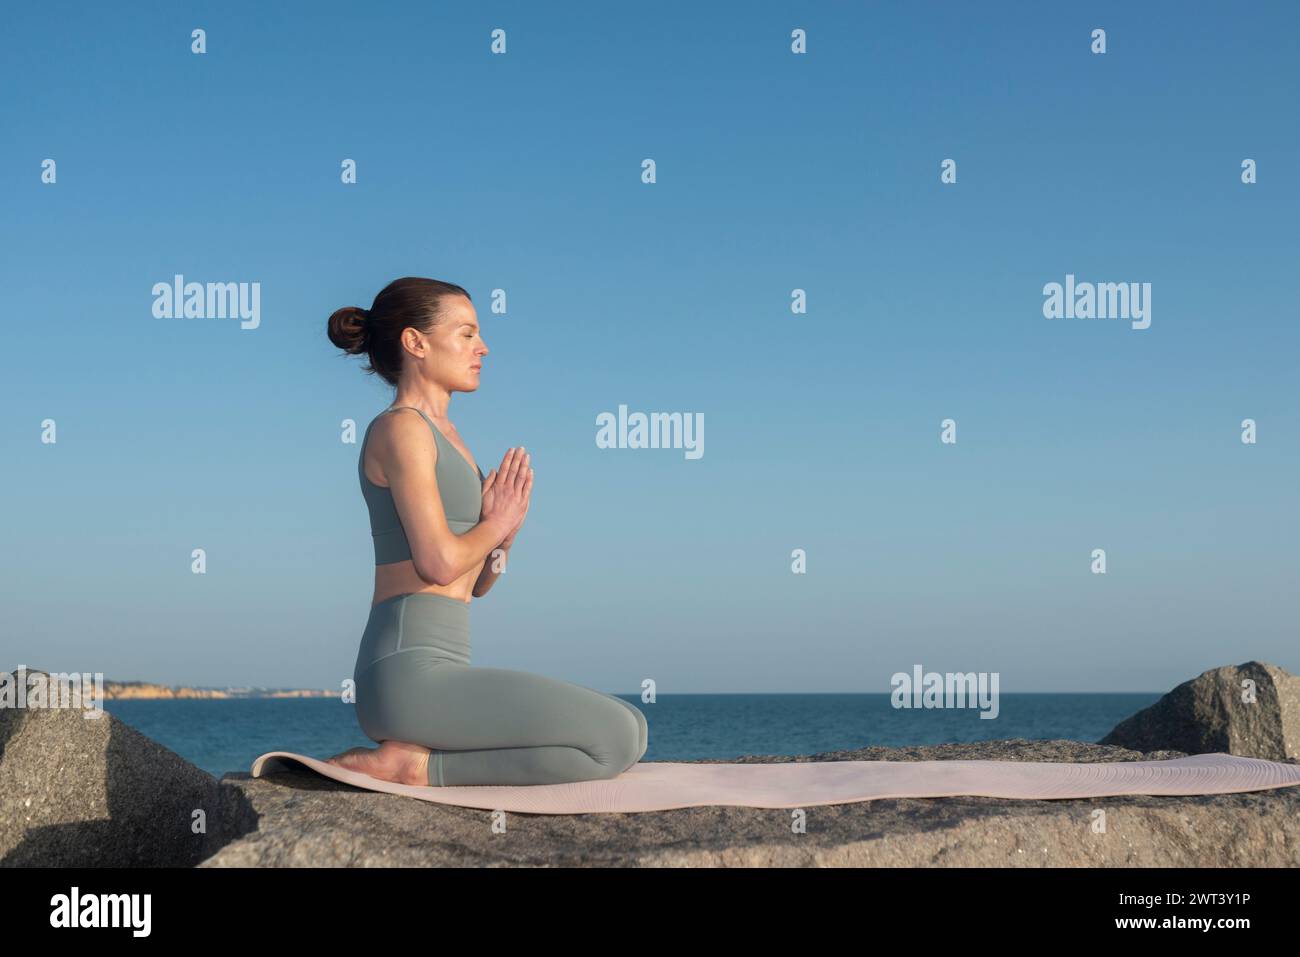 Frau kniet auf einer Yogamatte und meditiert am Meer. Stockfoto